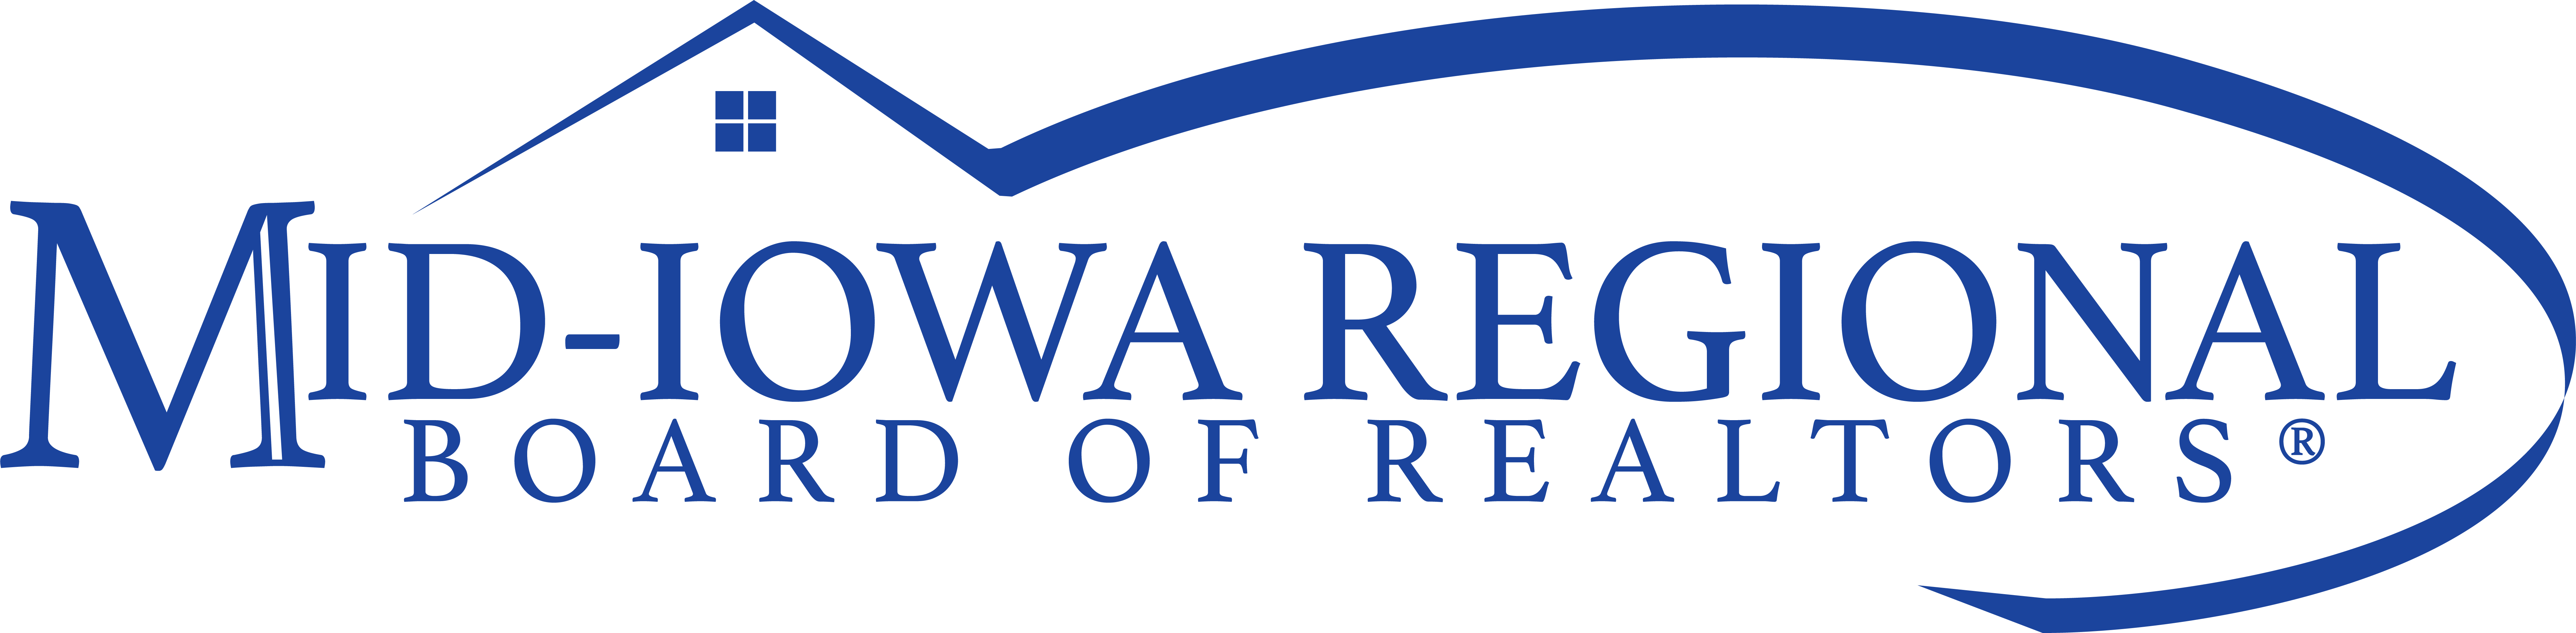 Mid-Iowa Regional Board of Realtors Logo